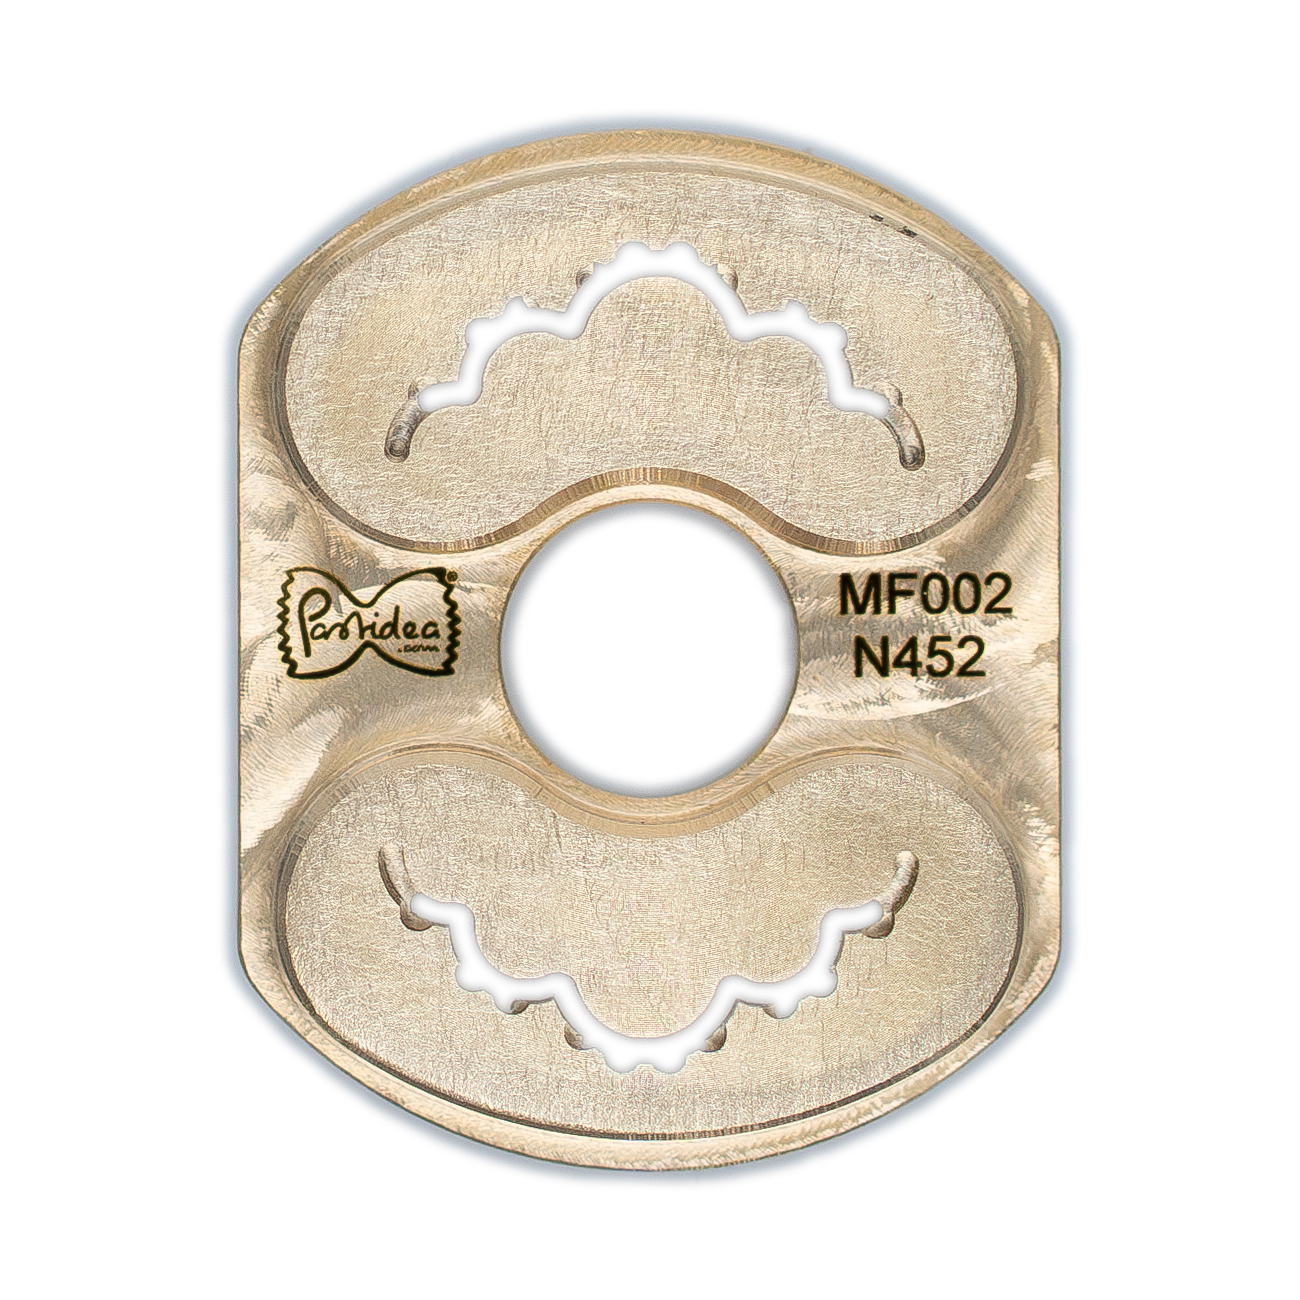 Inserto para pasta (tipo 2) en bronce spaghetti quadri chitarra 2,5x2,5 mm para máquina de pasta Philips serie Avance/7000 (se requiere soporte para inserto) (copia)